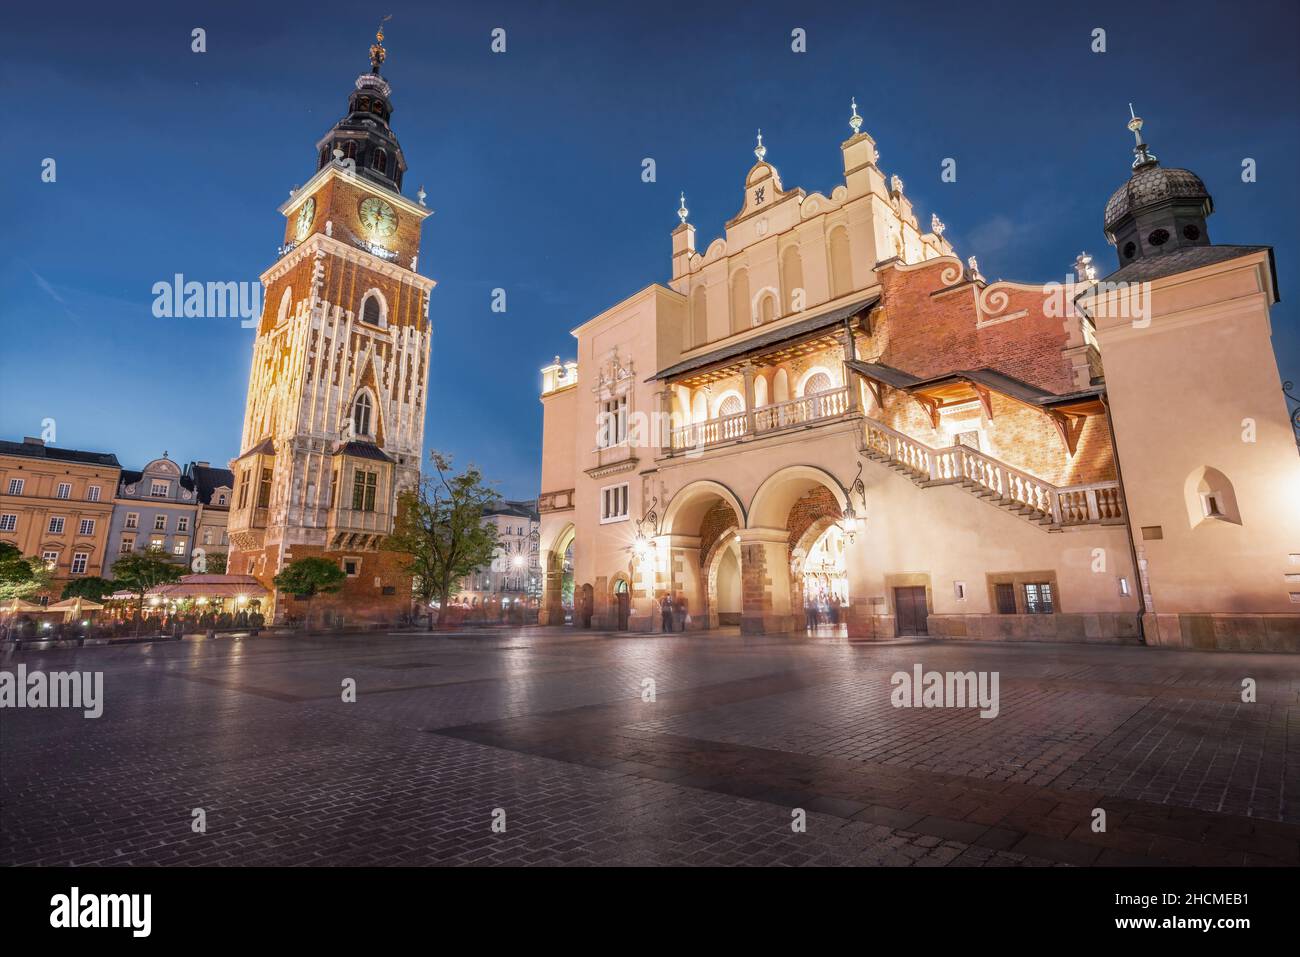 Tour de l'hôtel de ville et hall en tissu sur la place du marché principal la nuit - Cracovie, Pologne Banque D'Images